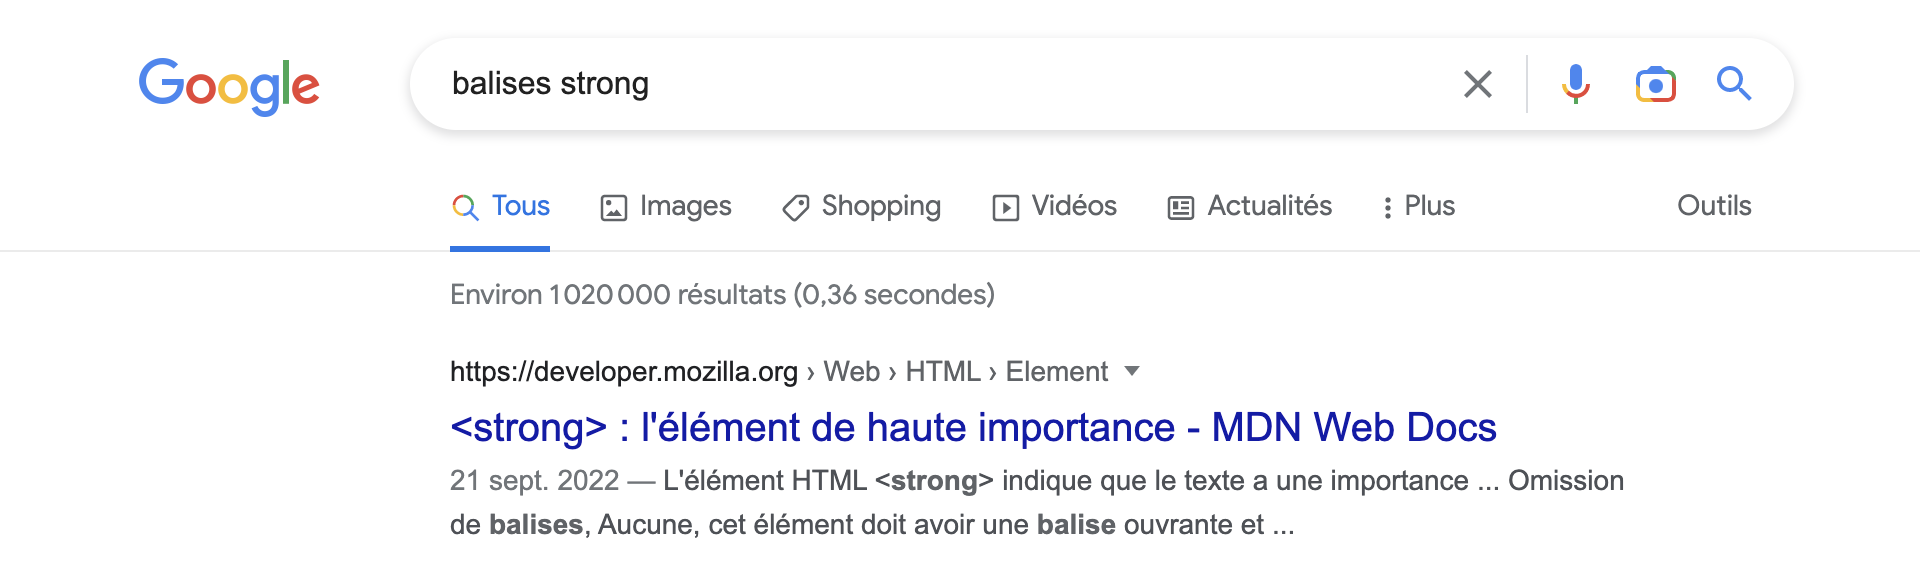 Mozilla est le mieux référencé sur Google lorsqu'on recherche